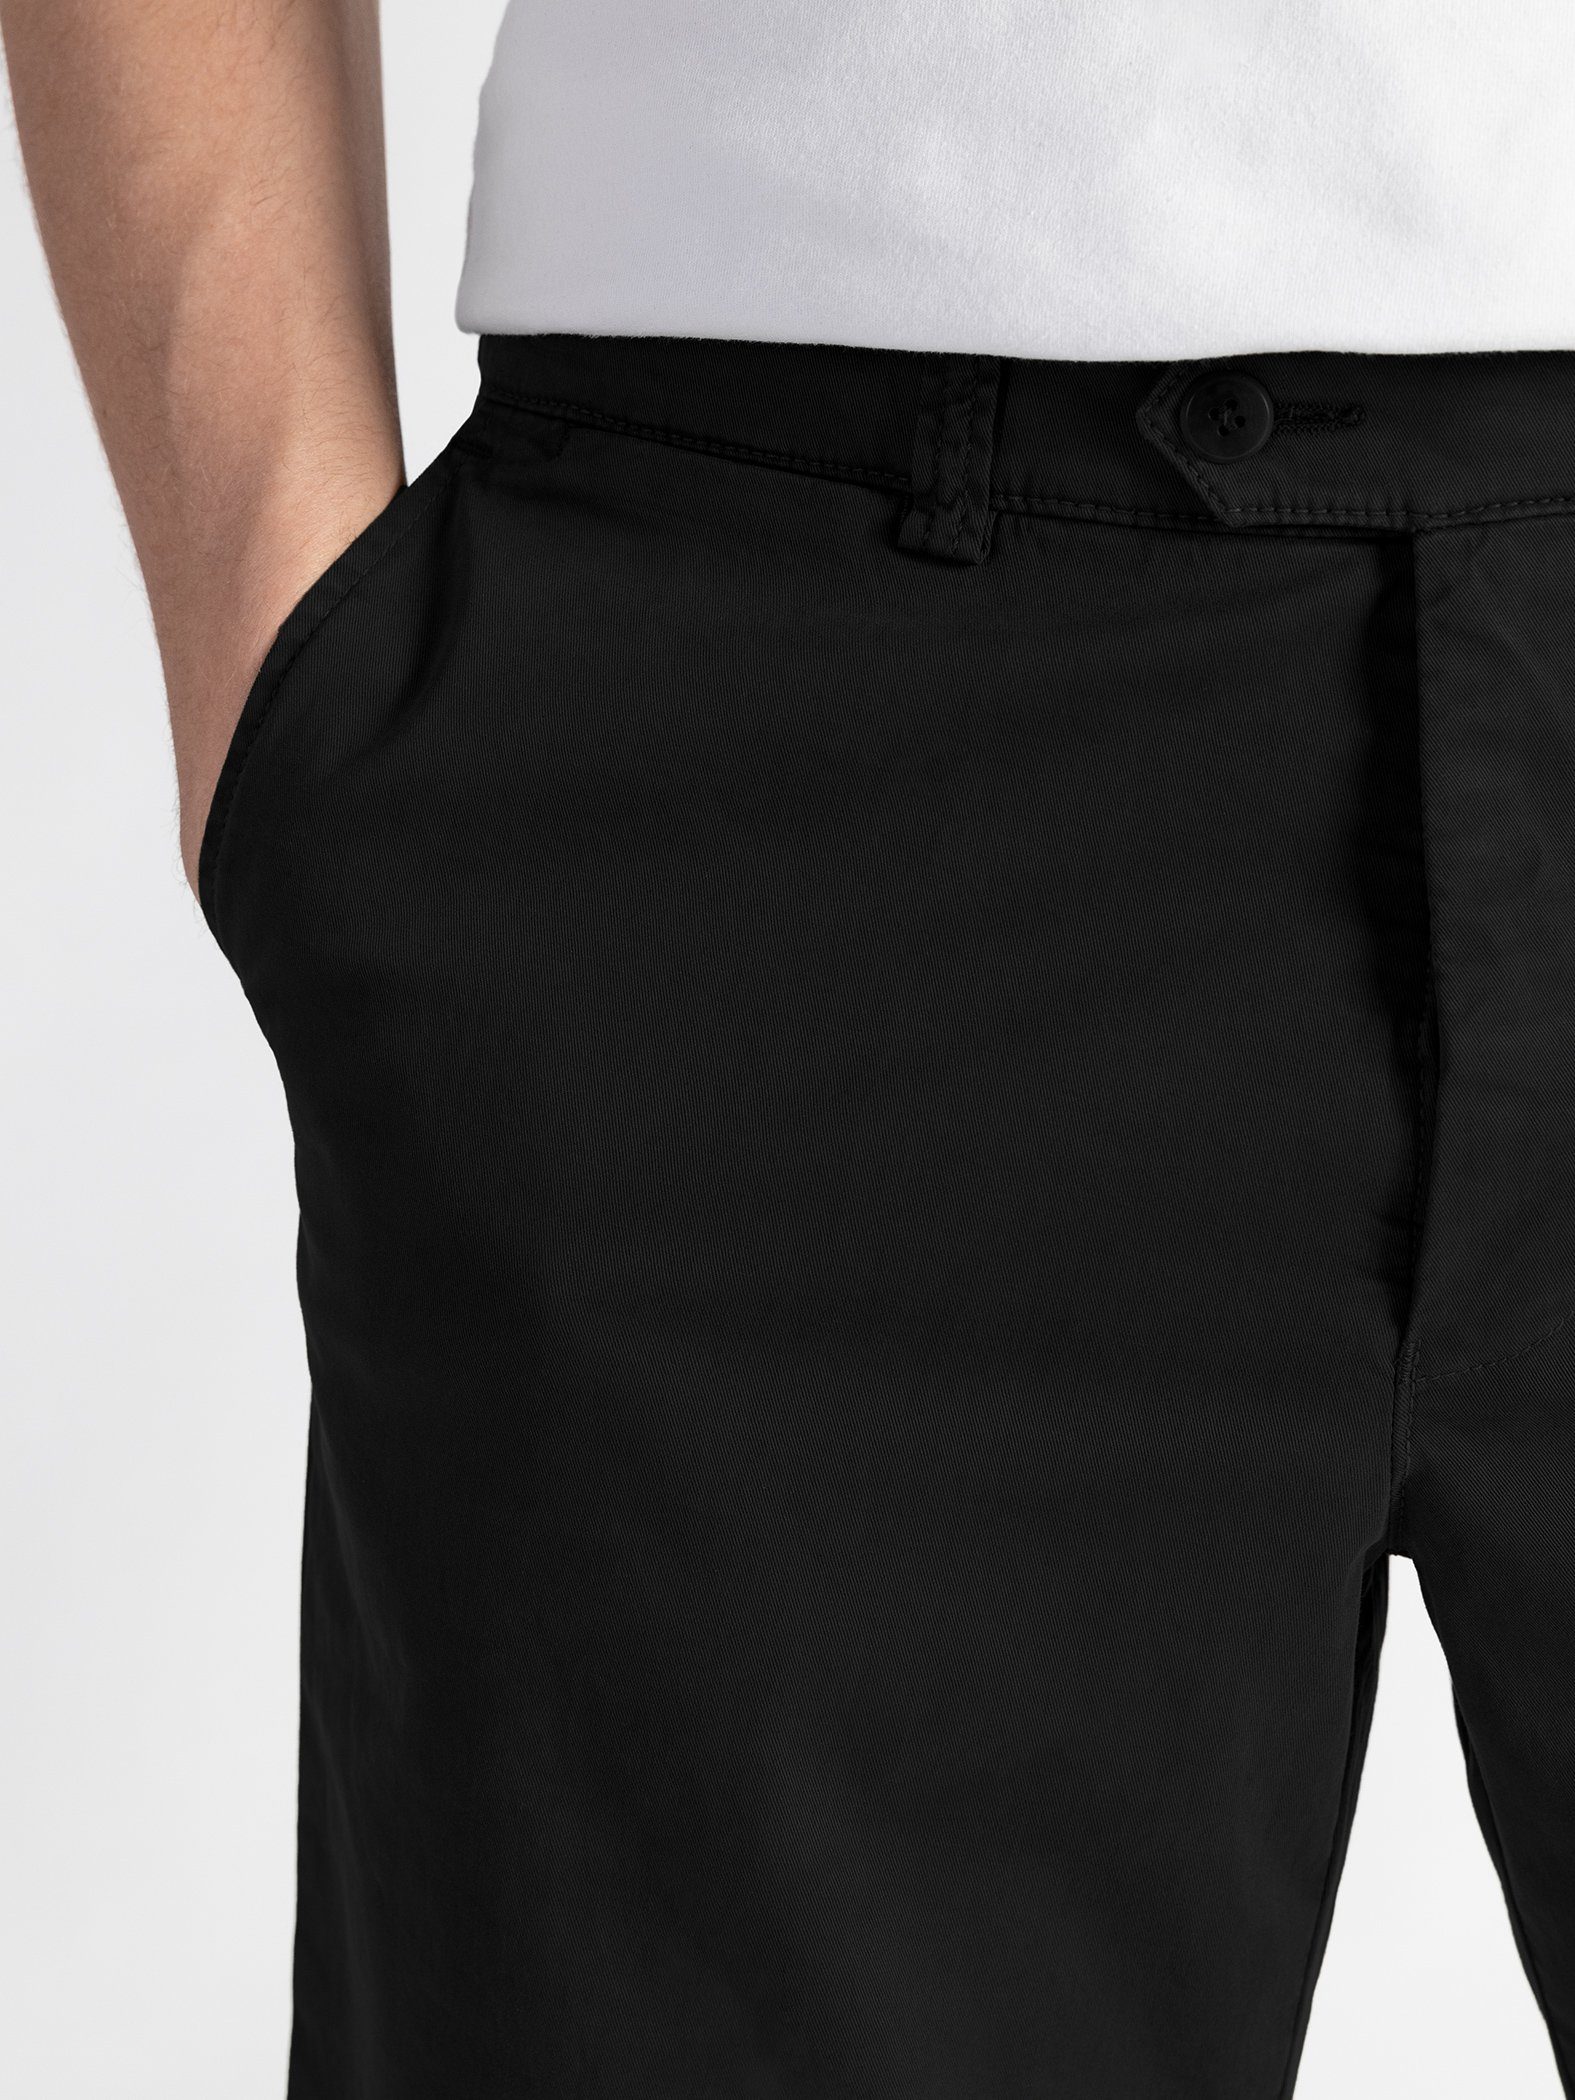 TwoMates Shorts Shorts mit elastischem Farbauswahl, Bund, Schwarz GOTS-zertifiziert